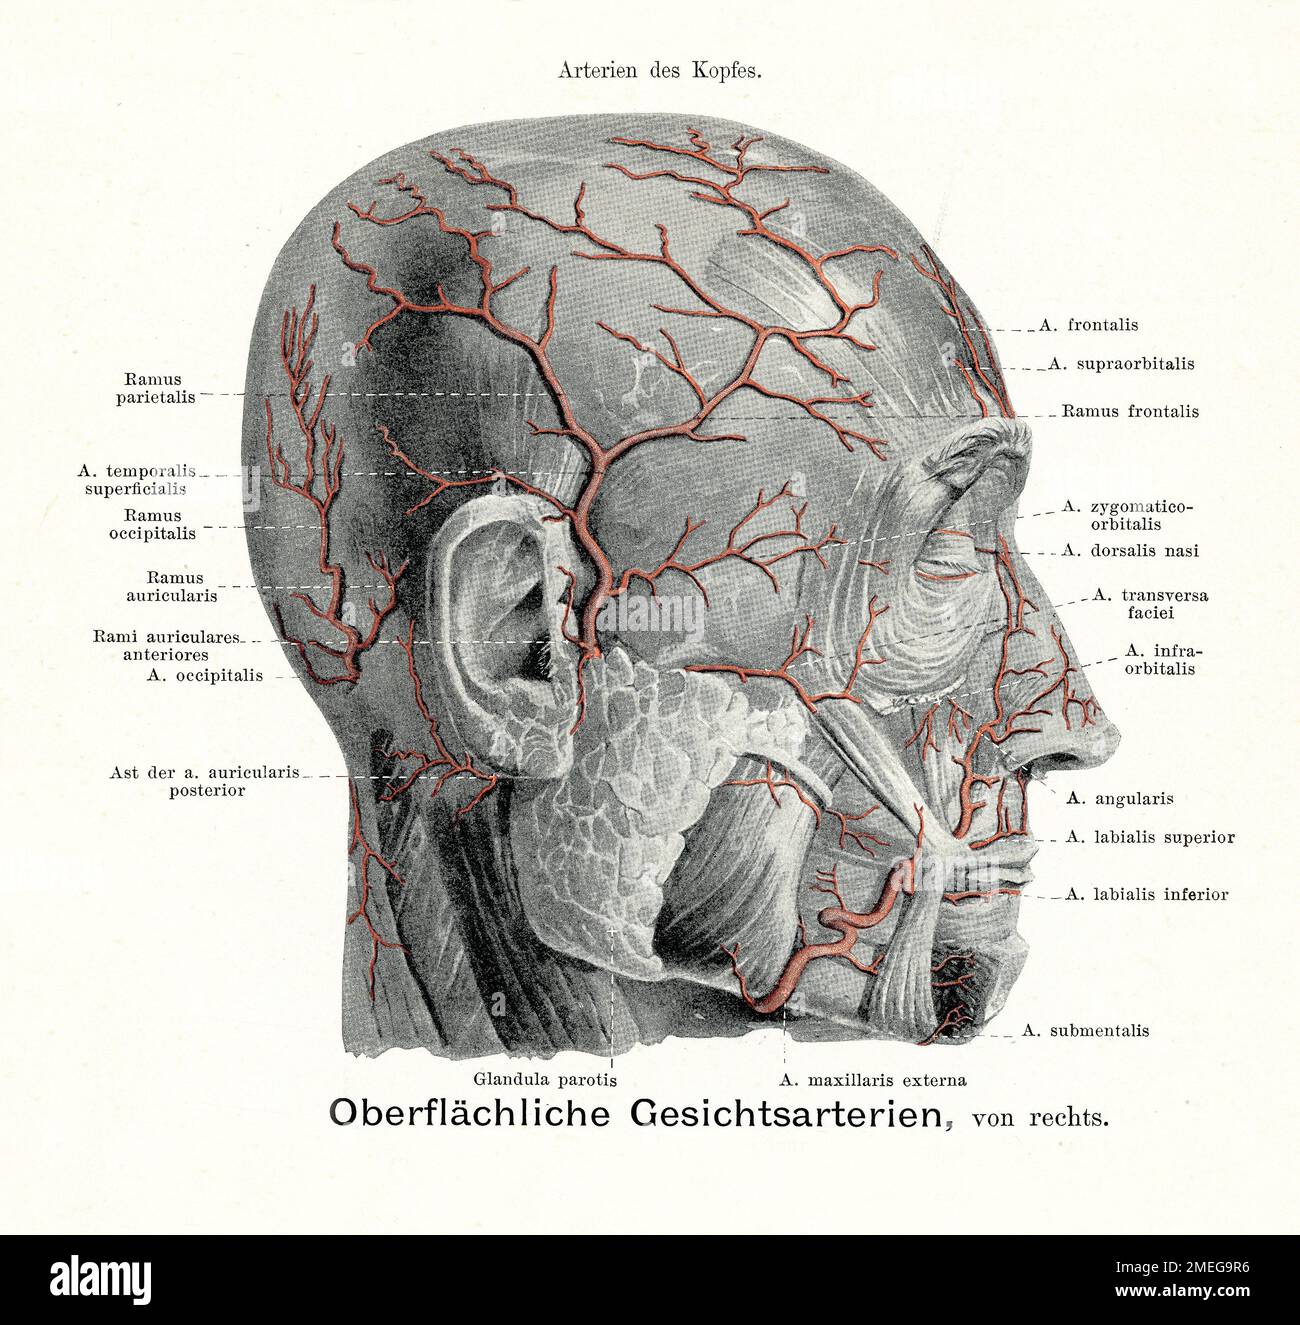 Artères superficielles du visage et du cuir chevelu. Illustration ancienne de l'anatomie, avec descriptions anatomiques allemandes Banque D'Images